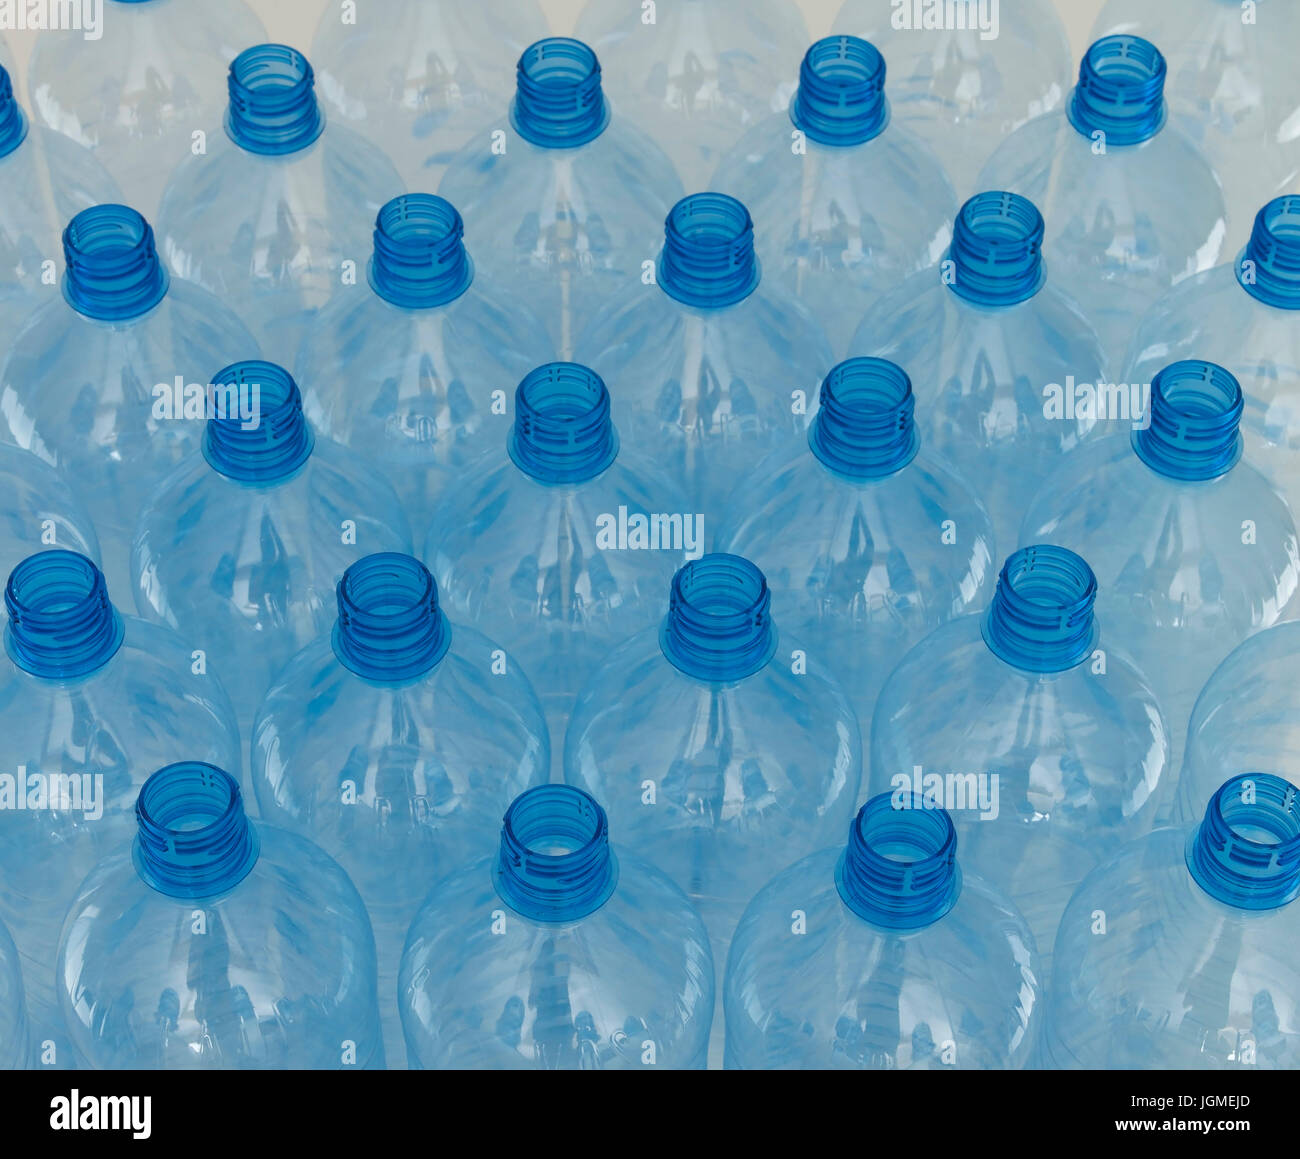 Svuotare le bottiglie di acqua - svuotare la bottiglia d'acqua, leere Wasserflaschen - svuotare la bottiglia di acqua Foto Stock